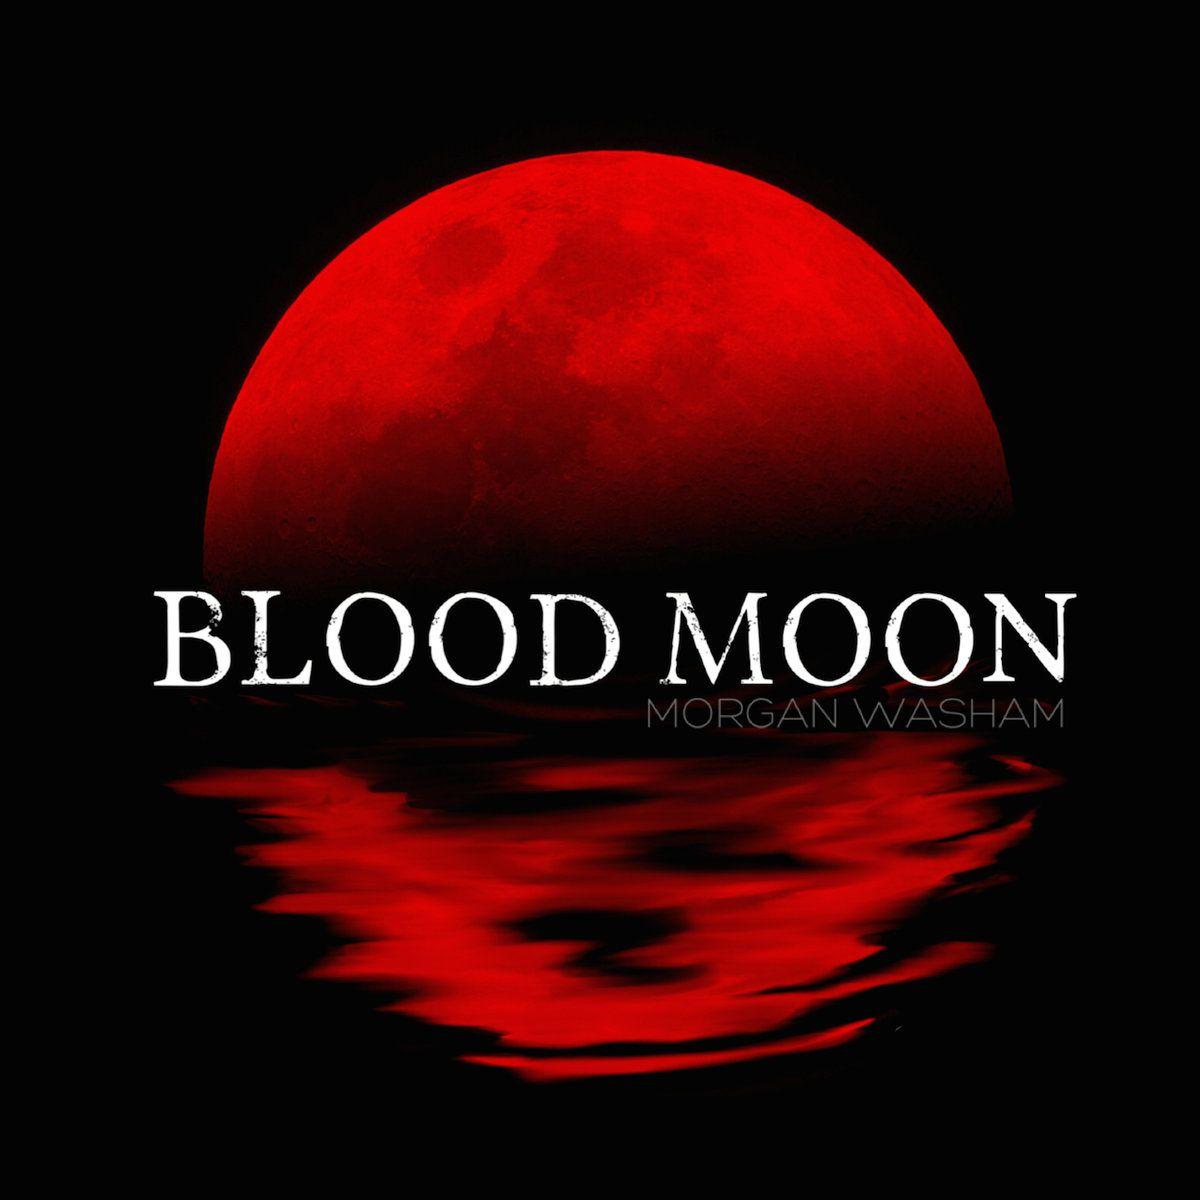 Red Moon Logo - Blood Moon | Morgan Washam and Blood Moon